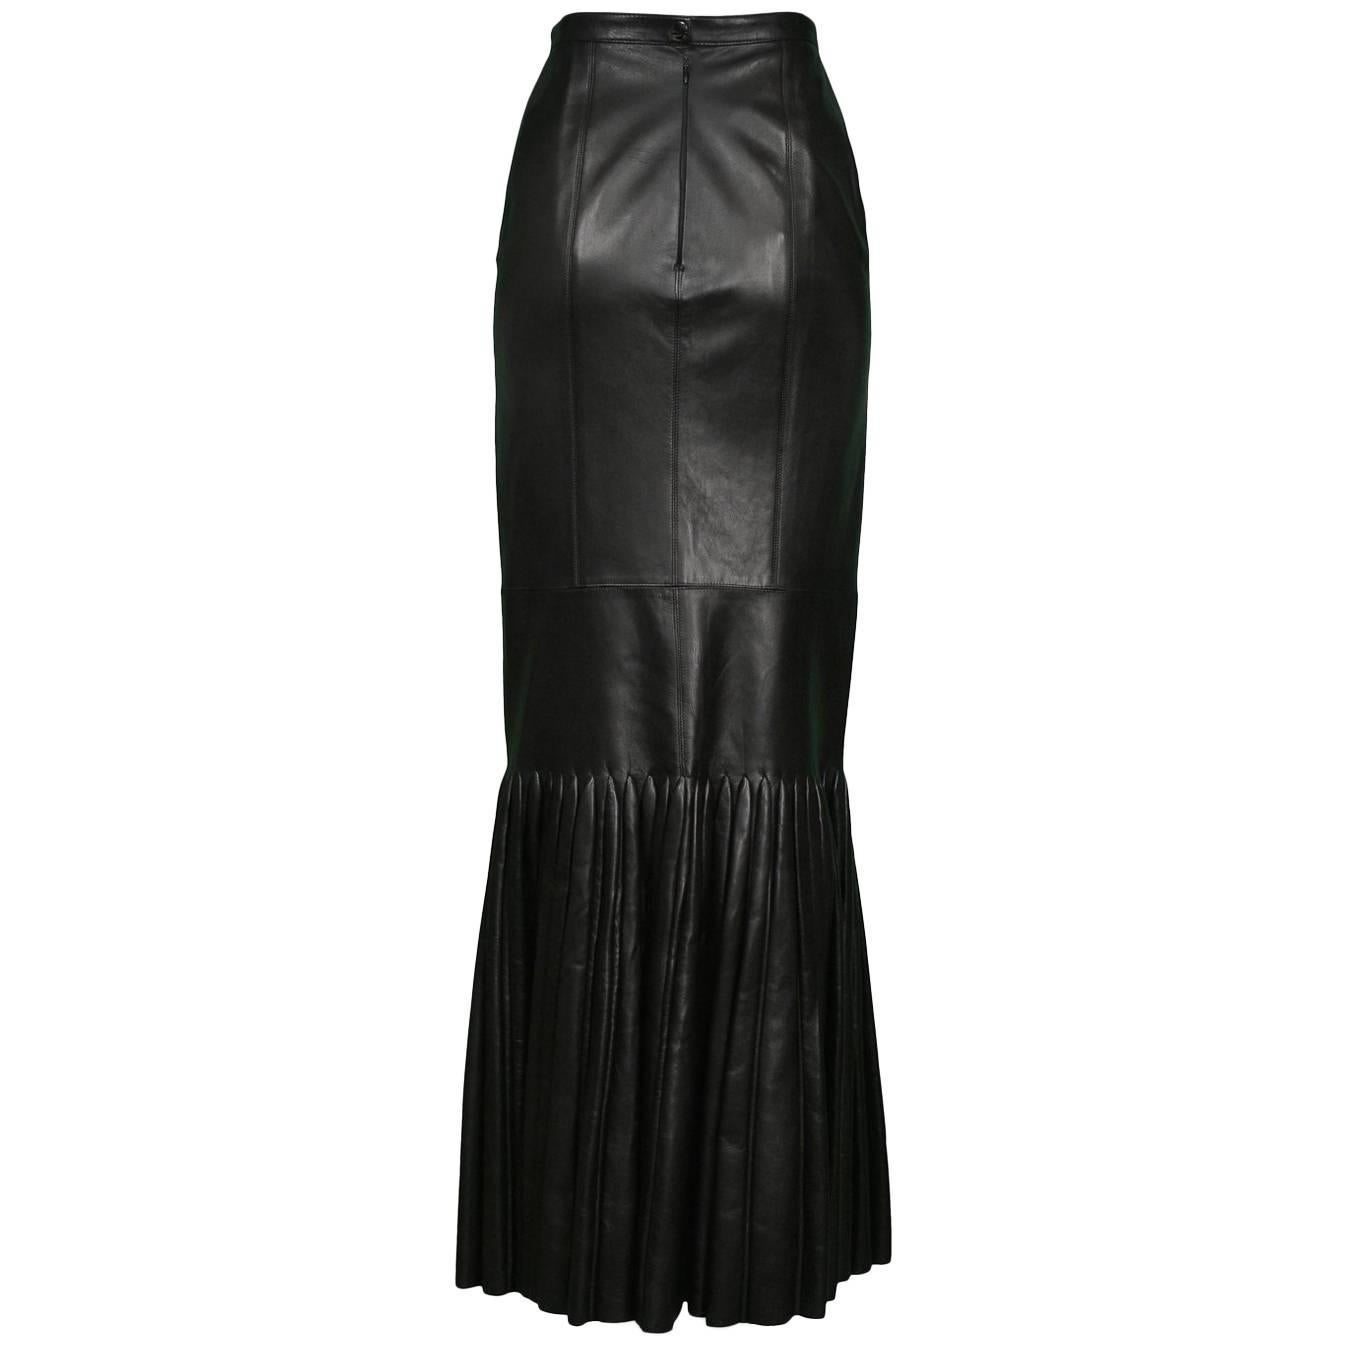 Unusual Vintage Alaia Black Leather Mermaid Skirt with Pleated Hem 